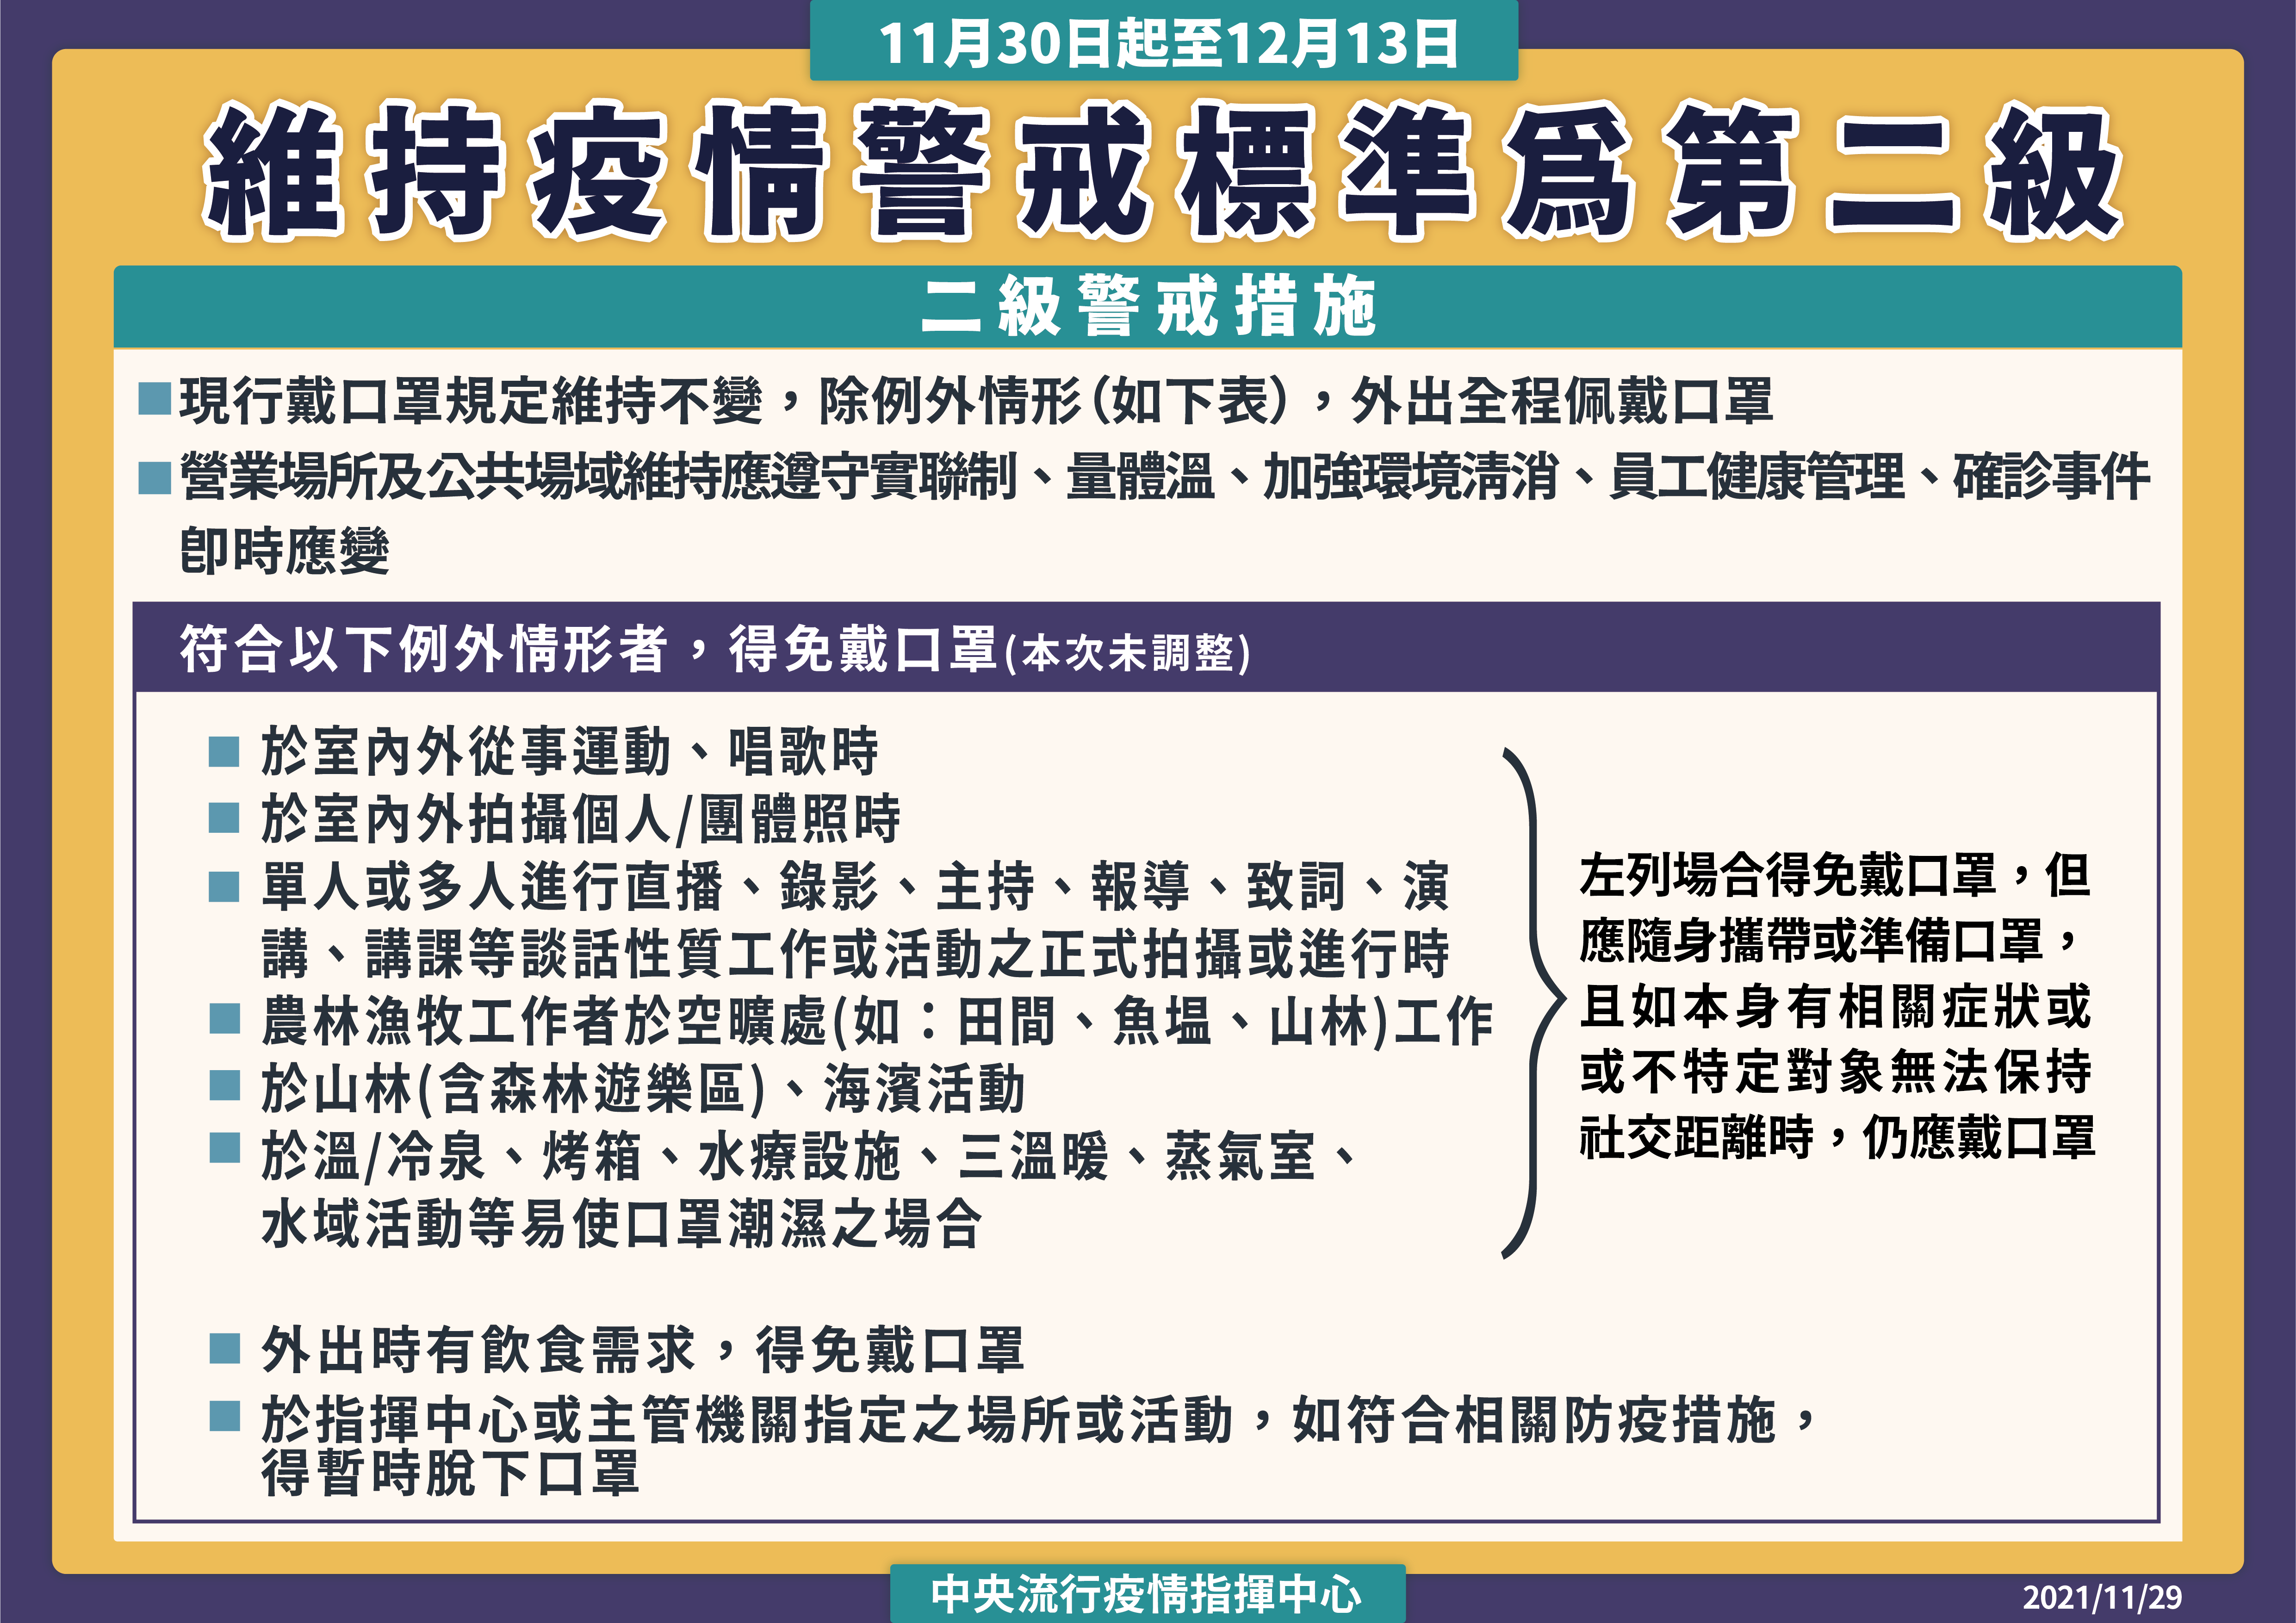 Đài Loan tiếp tục kéo dài cảnh báo dịch bệnh cấp đội hai đến ngày 13/12. (Nguồn ảnh: Trung tâm Chỉ huy và phòng chống dịch bệnh Trung ương Đài Loan)